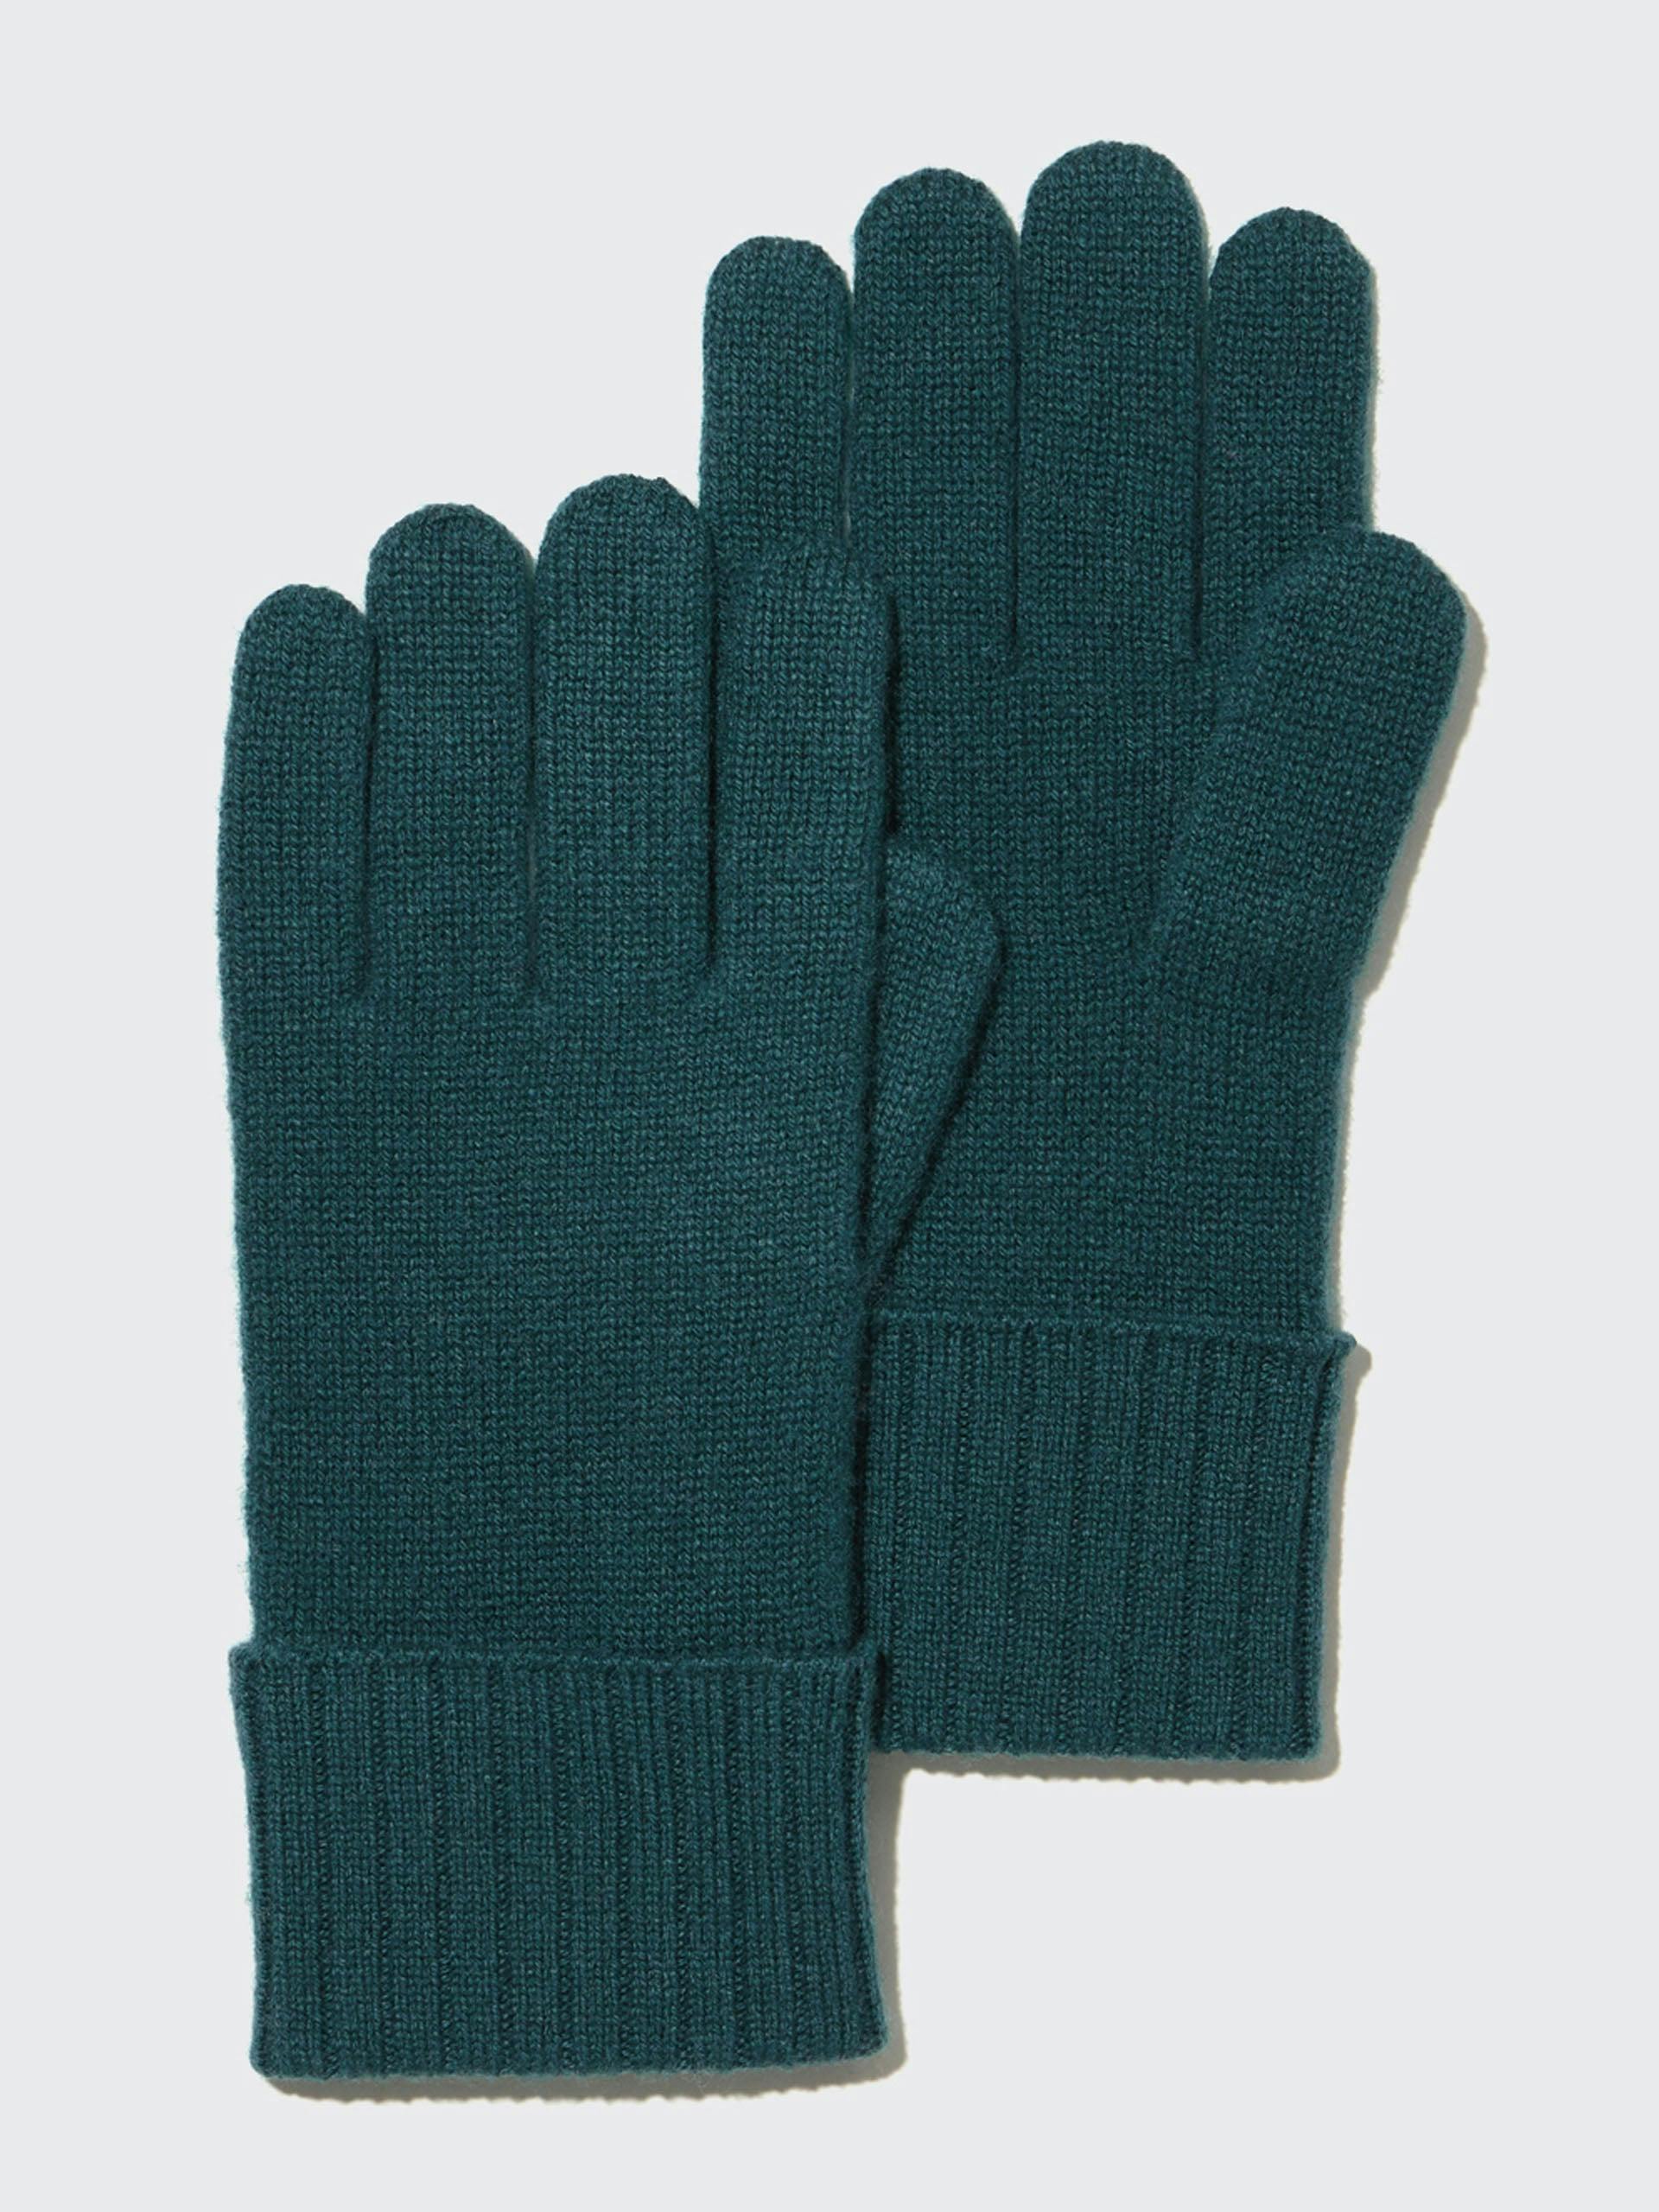 Dark green cashmere knitted gloves